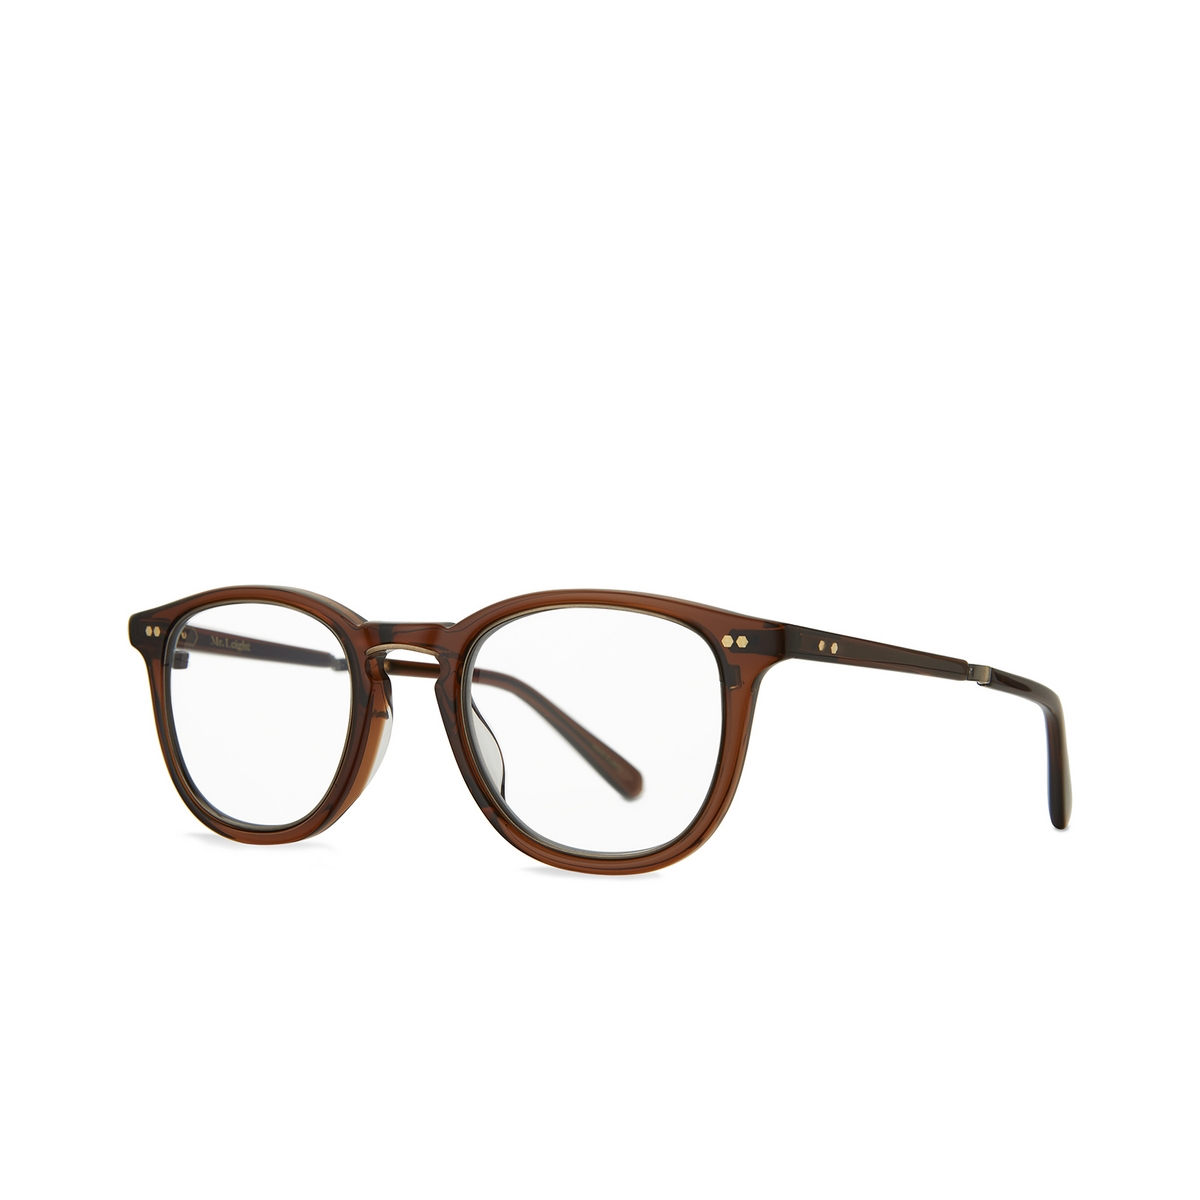 Mr. Leight® Square Eyeglasses: Coopers C color Carmelita - Antique Gold Crmlta-atg - three-quarters view.